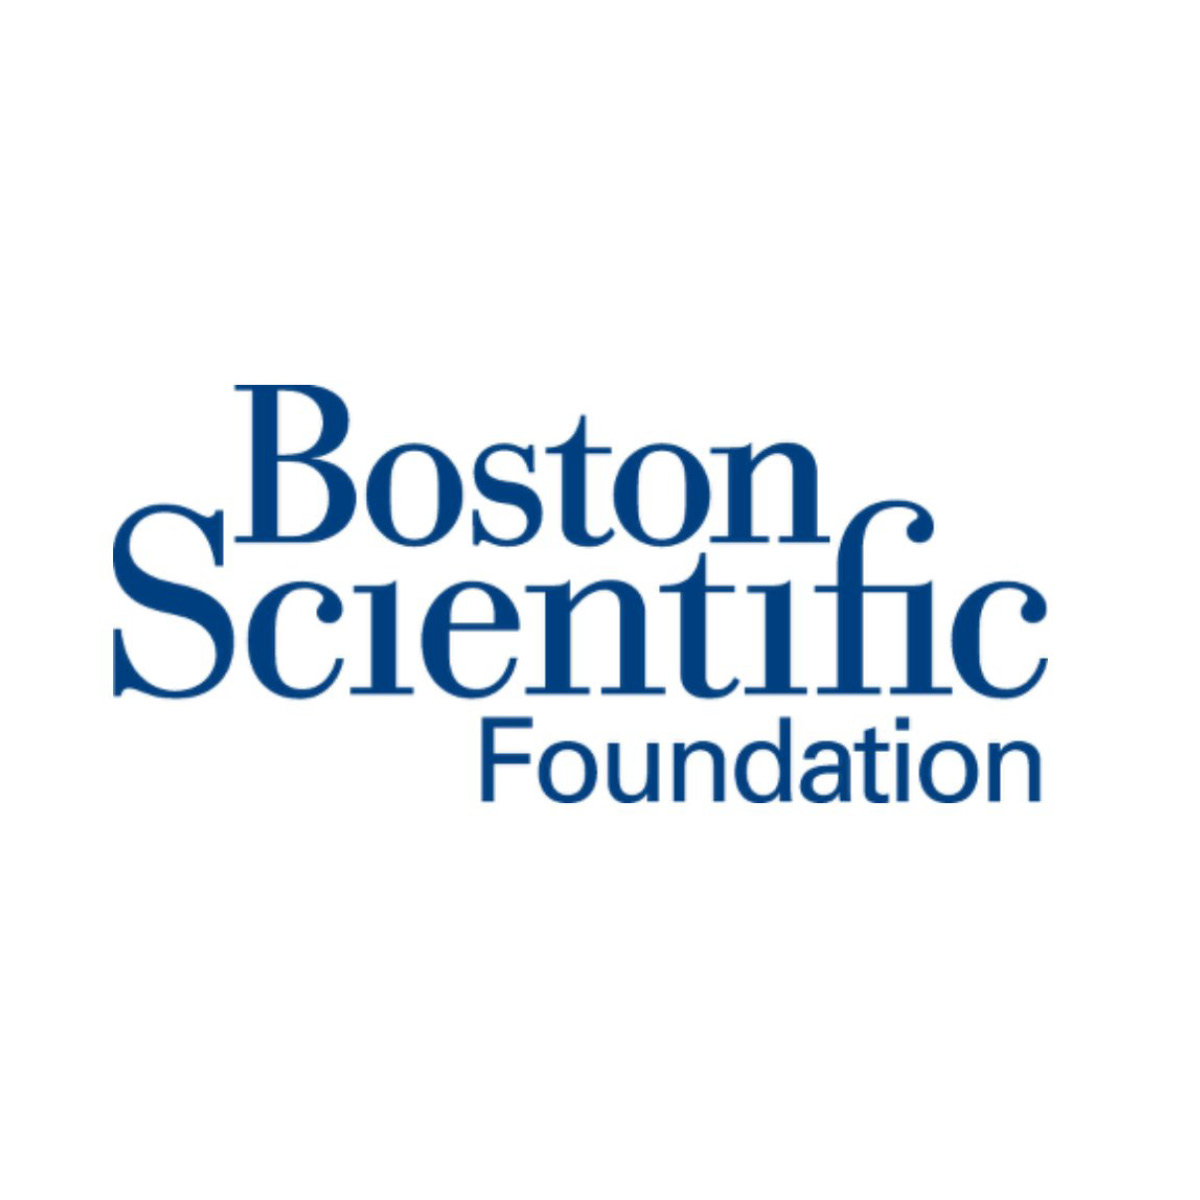 Boston Scientific Foundation Logo